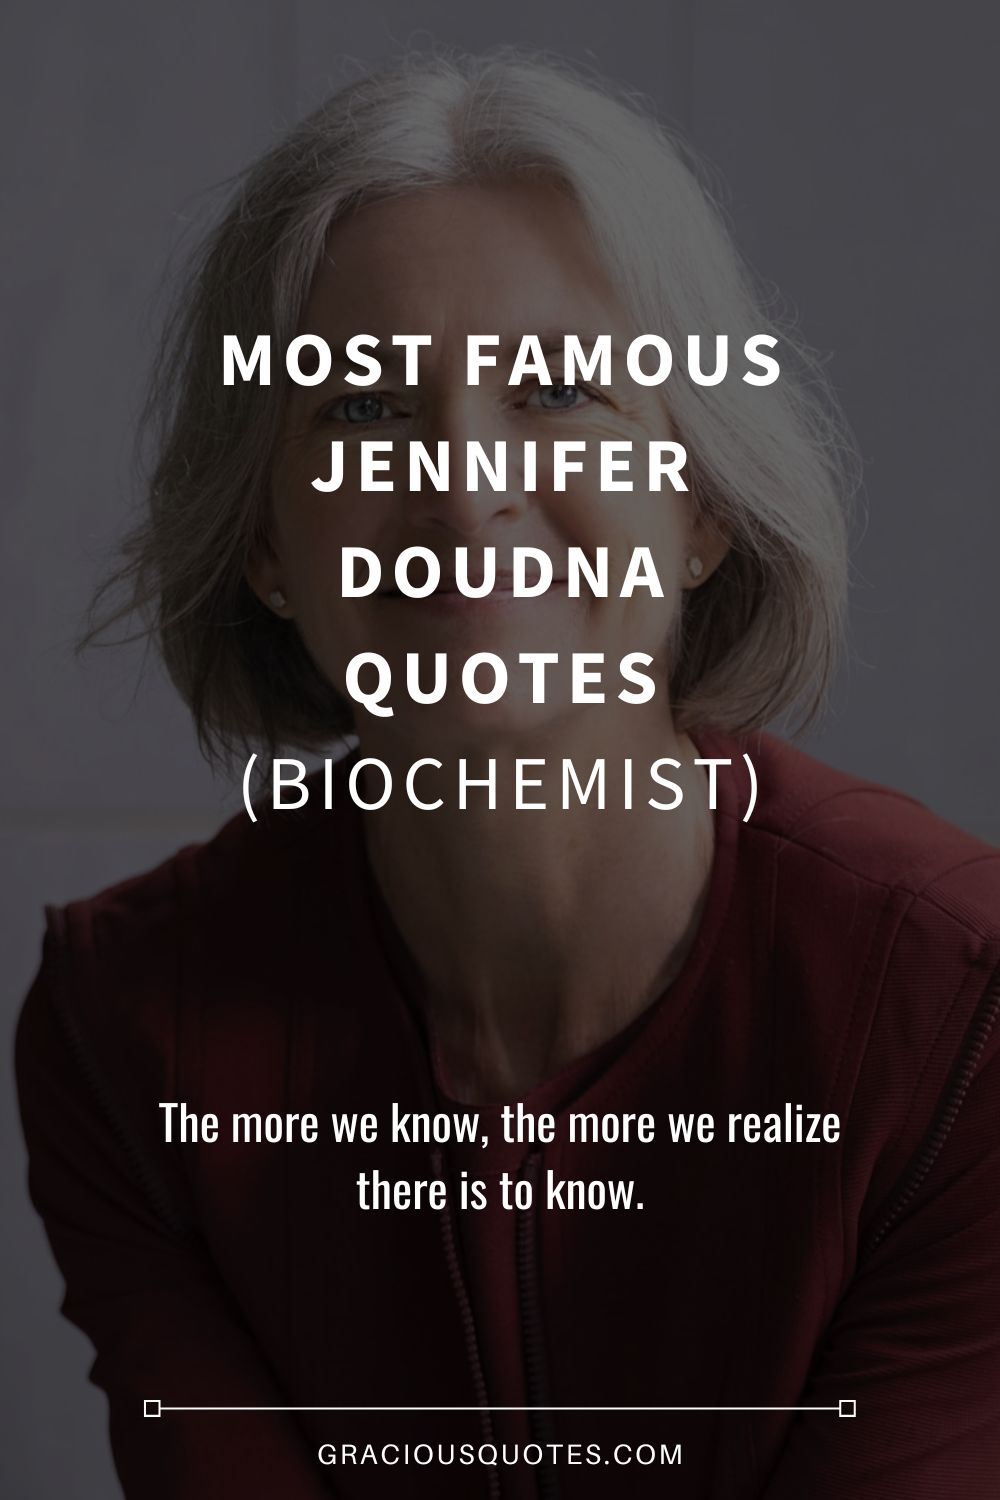 Most Famous Jennifer Doudna Quotes (BIOCHEMIST) - Gracious Quotes